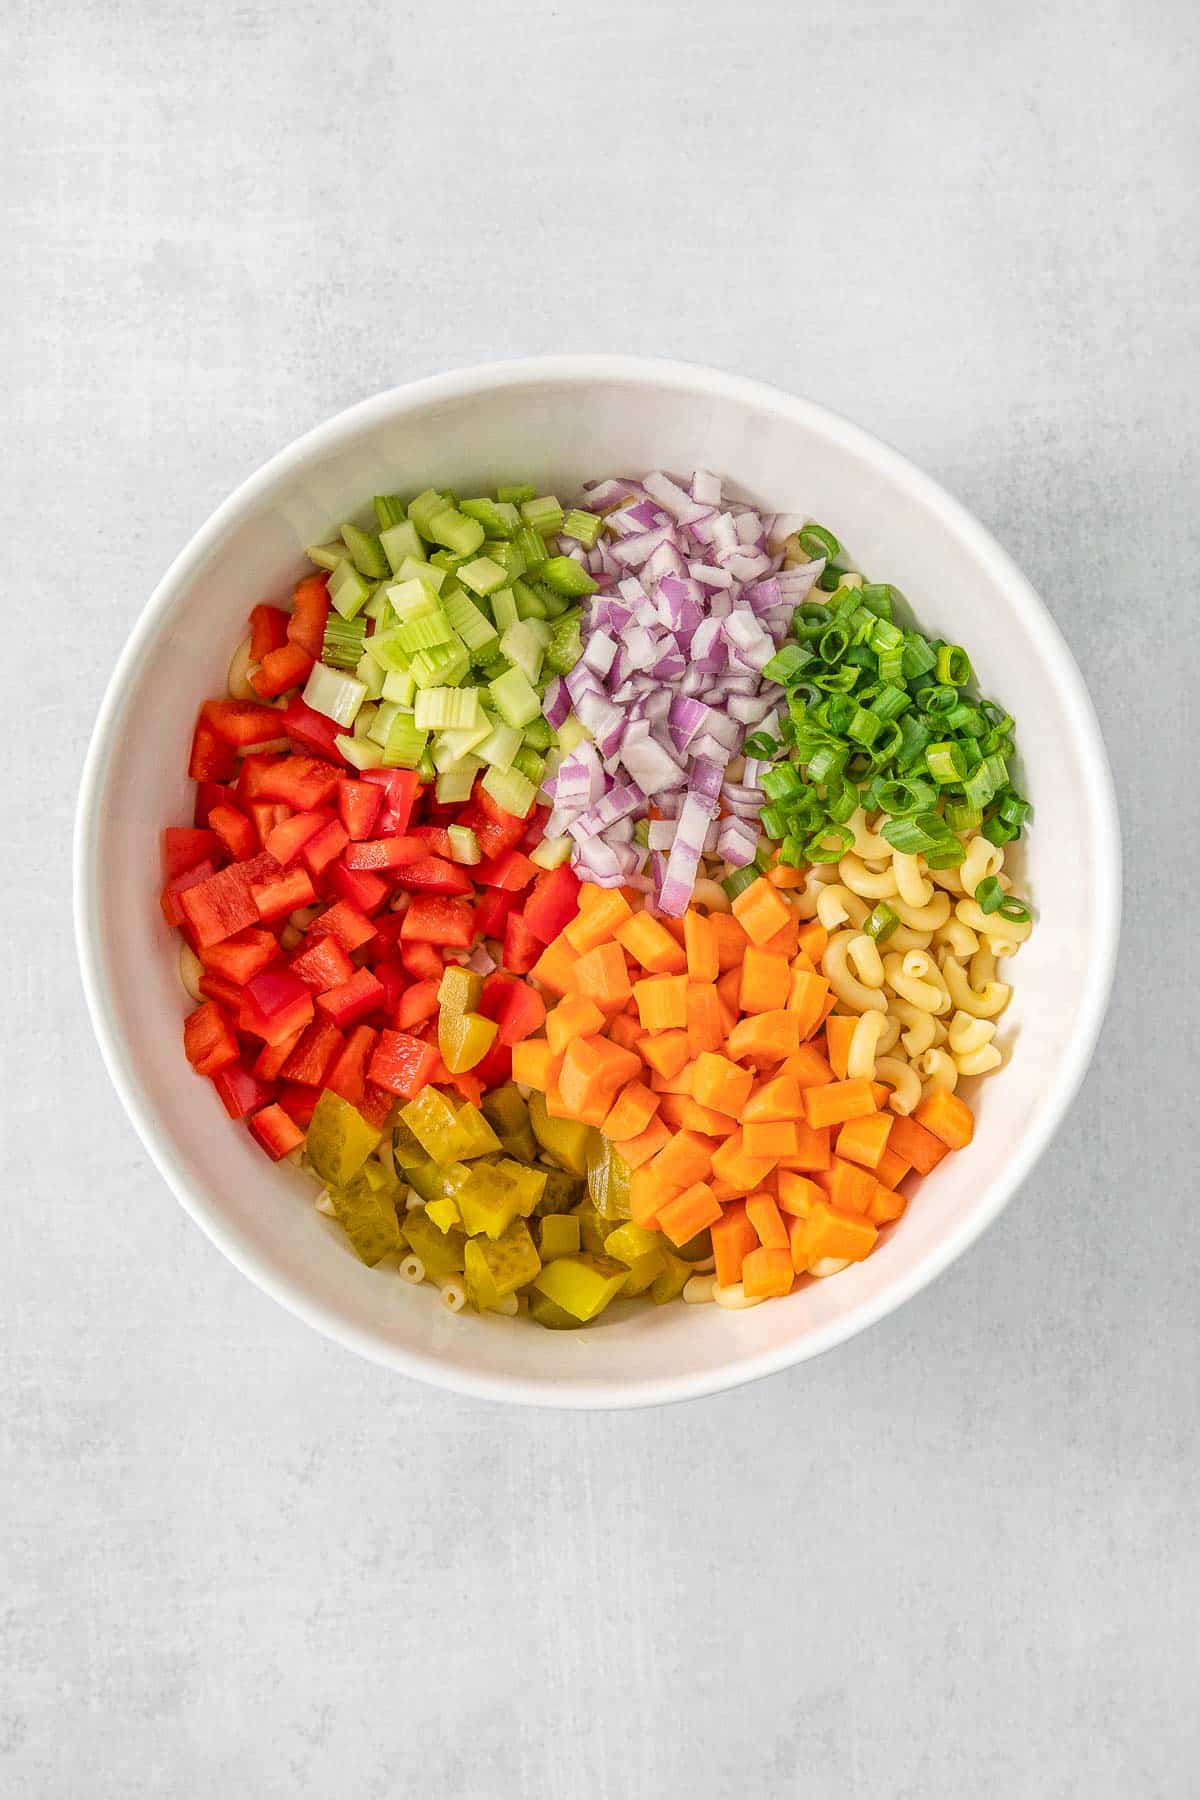 Macaroni Salad ingredients added to large white mixing bowl.